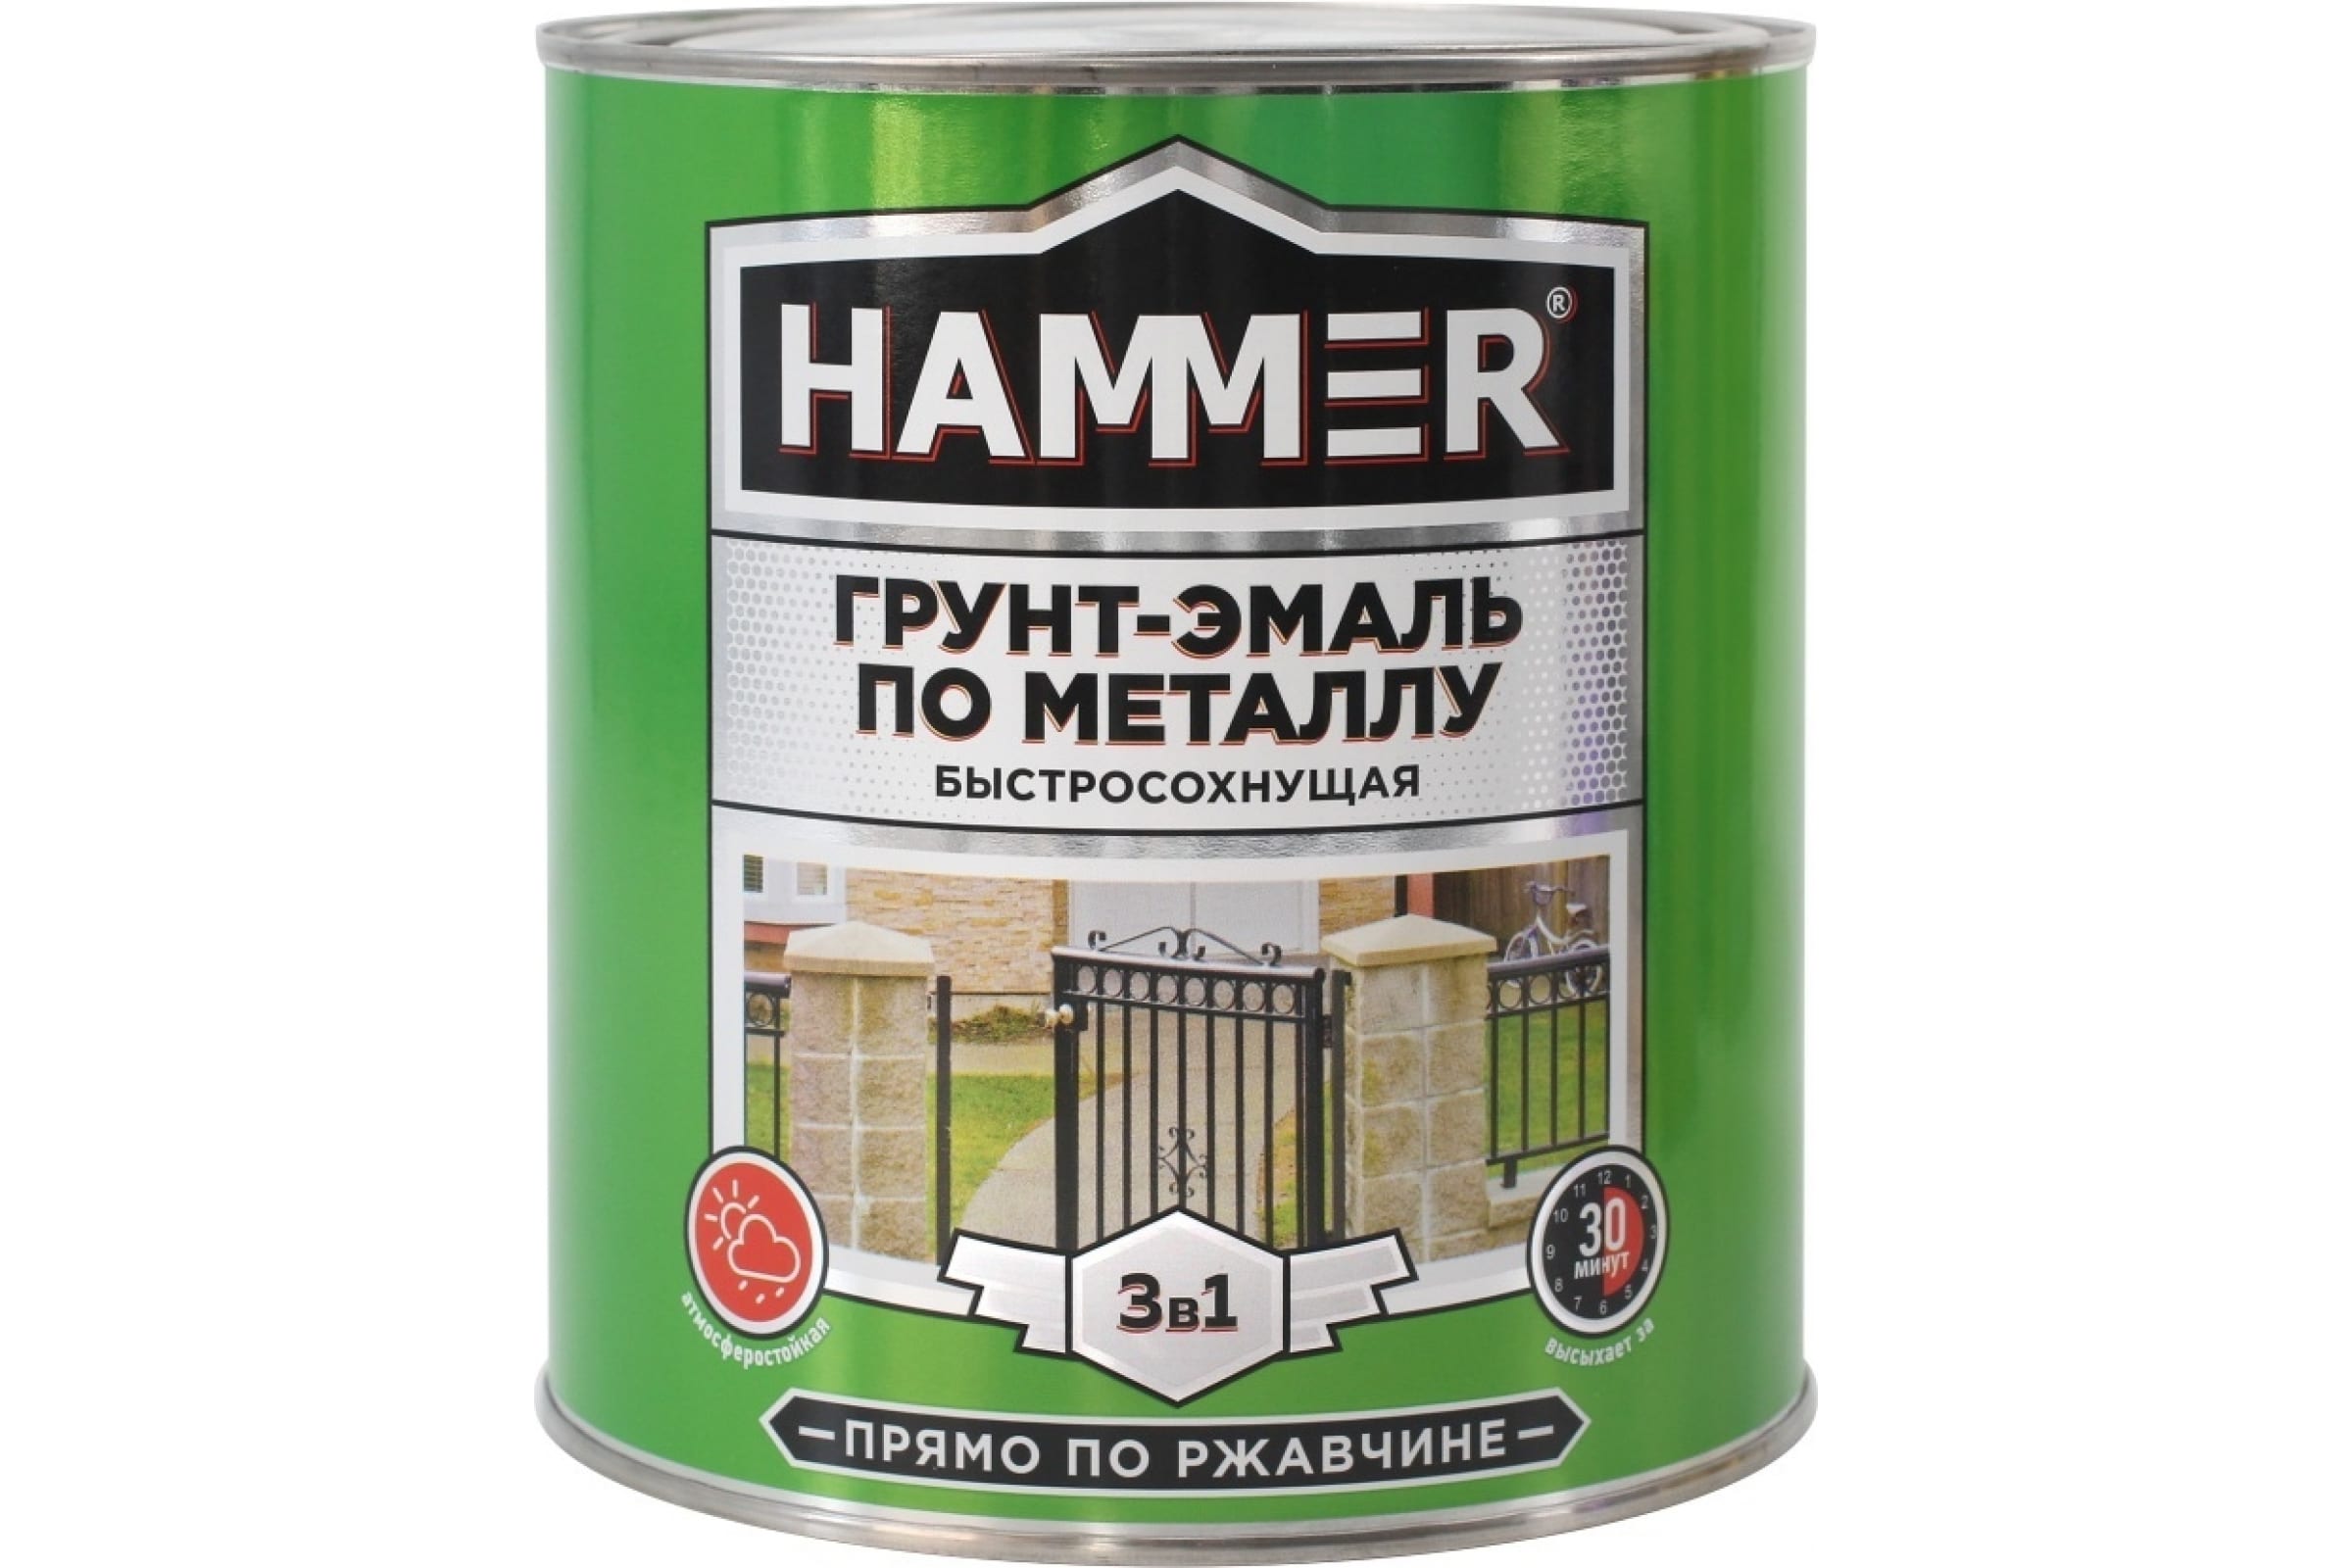 HAMMER Грунт-эмаль по металлу 3 в 1 б/с серая 2,7 кг / 4 ЭК000125866